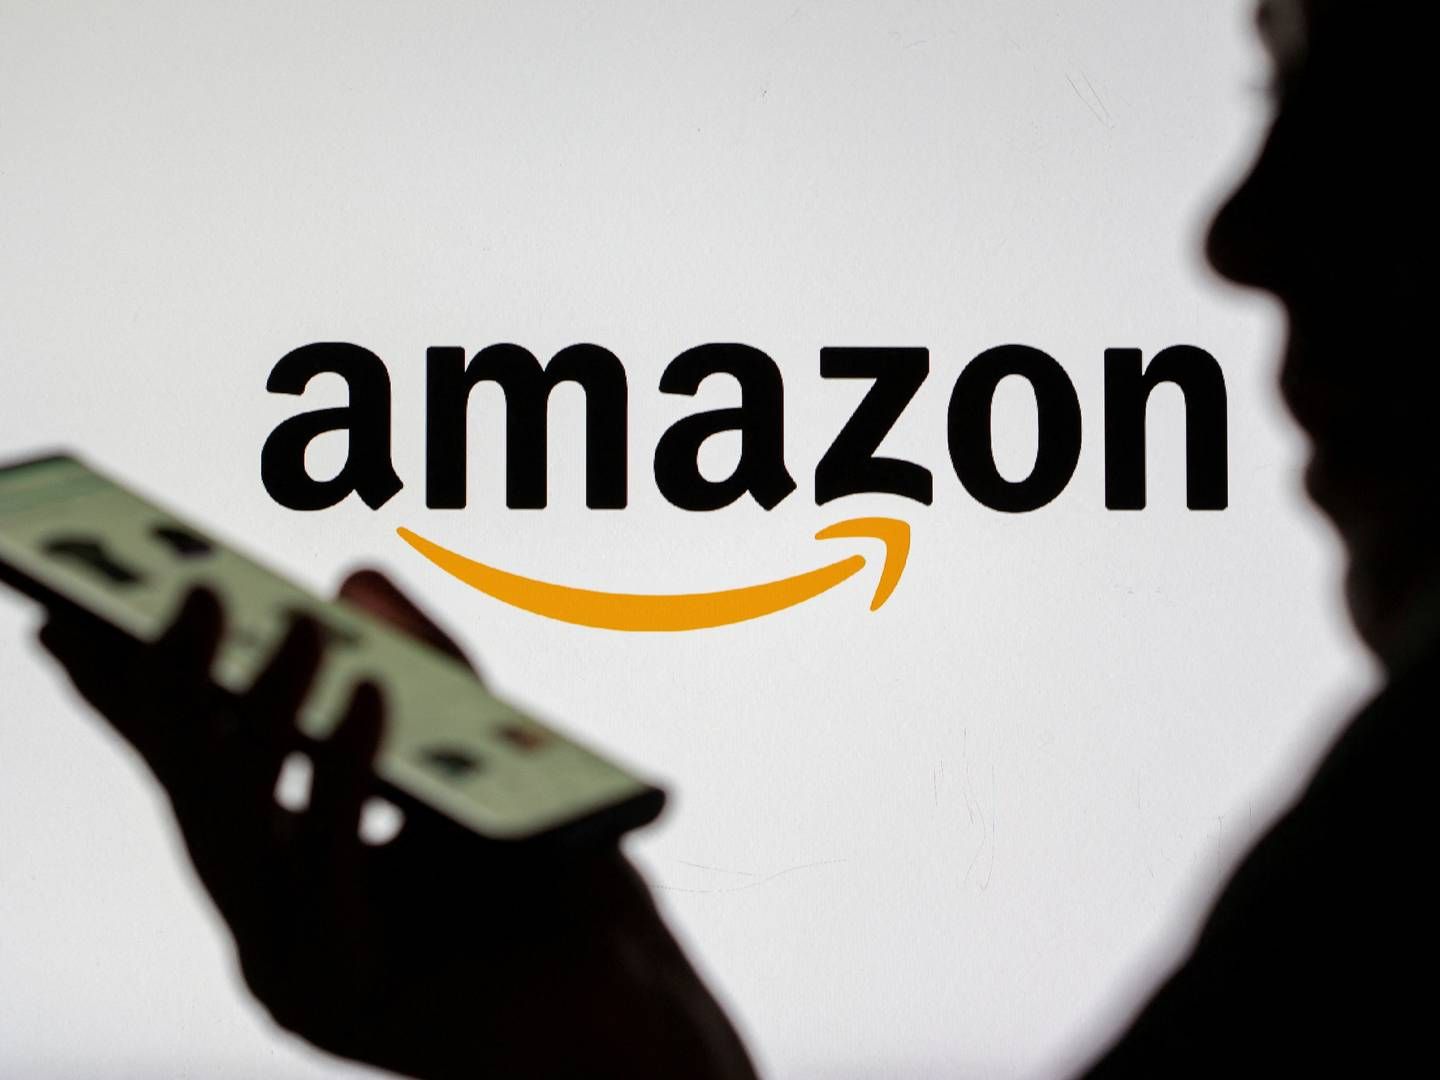 Amazon afholdt sin årlige generalforsamling i sidste uge.